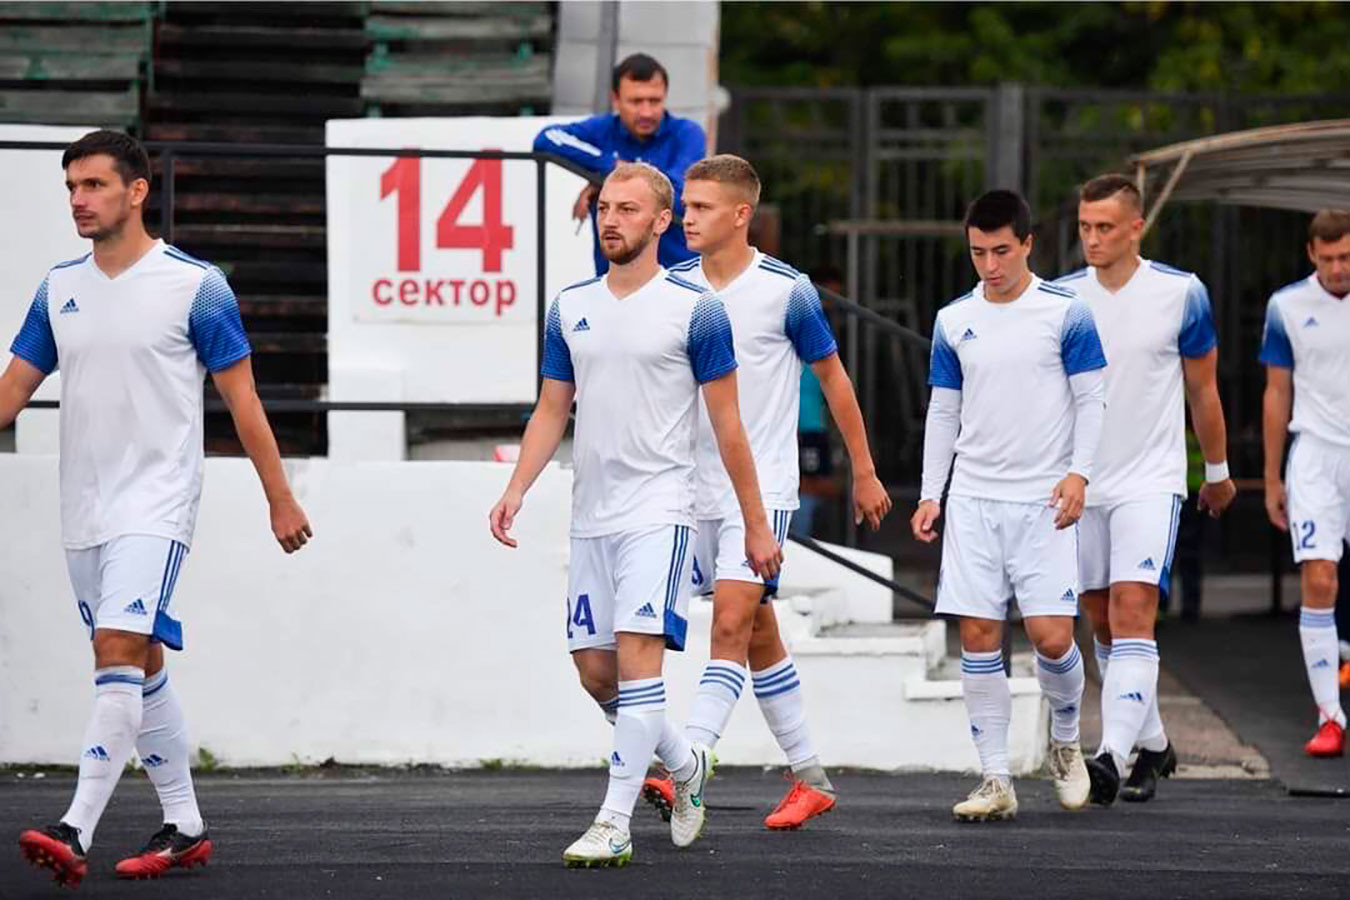 Футболисты иркутского «Зенита» отказались играть за команду из-за долгов